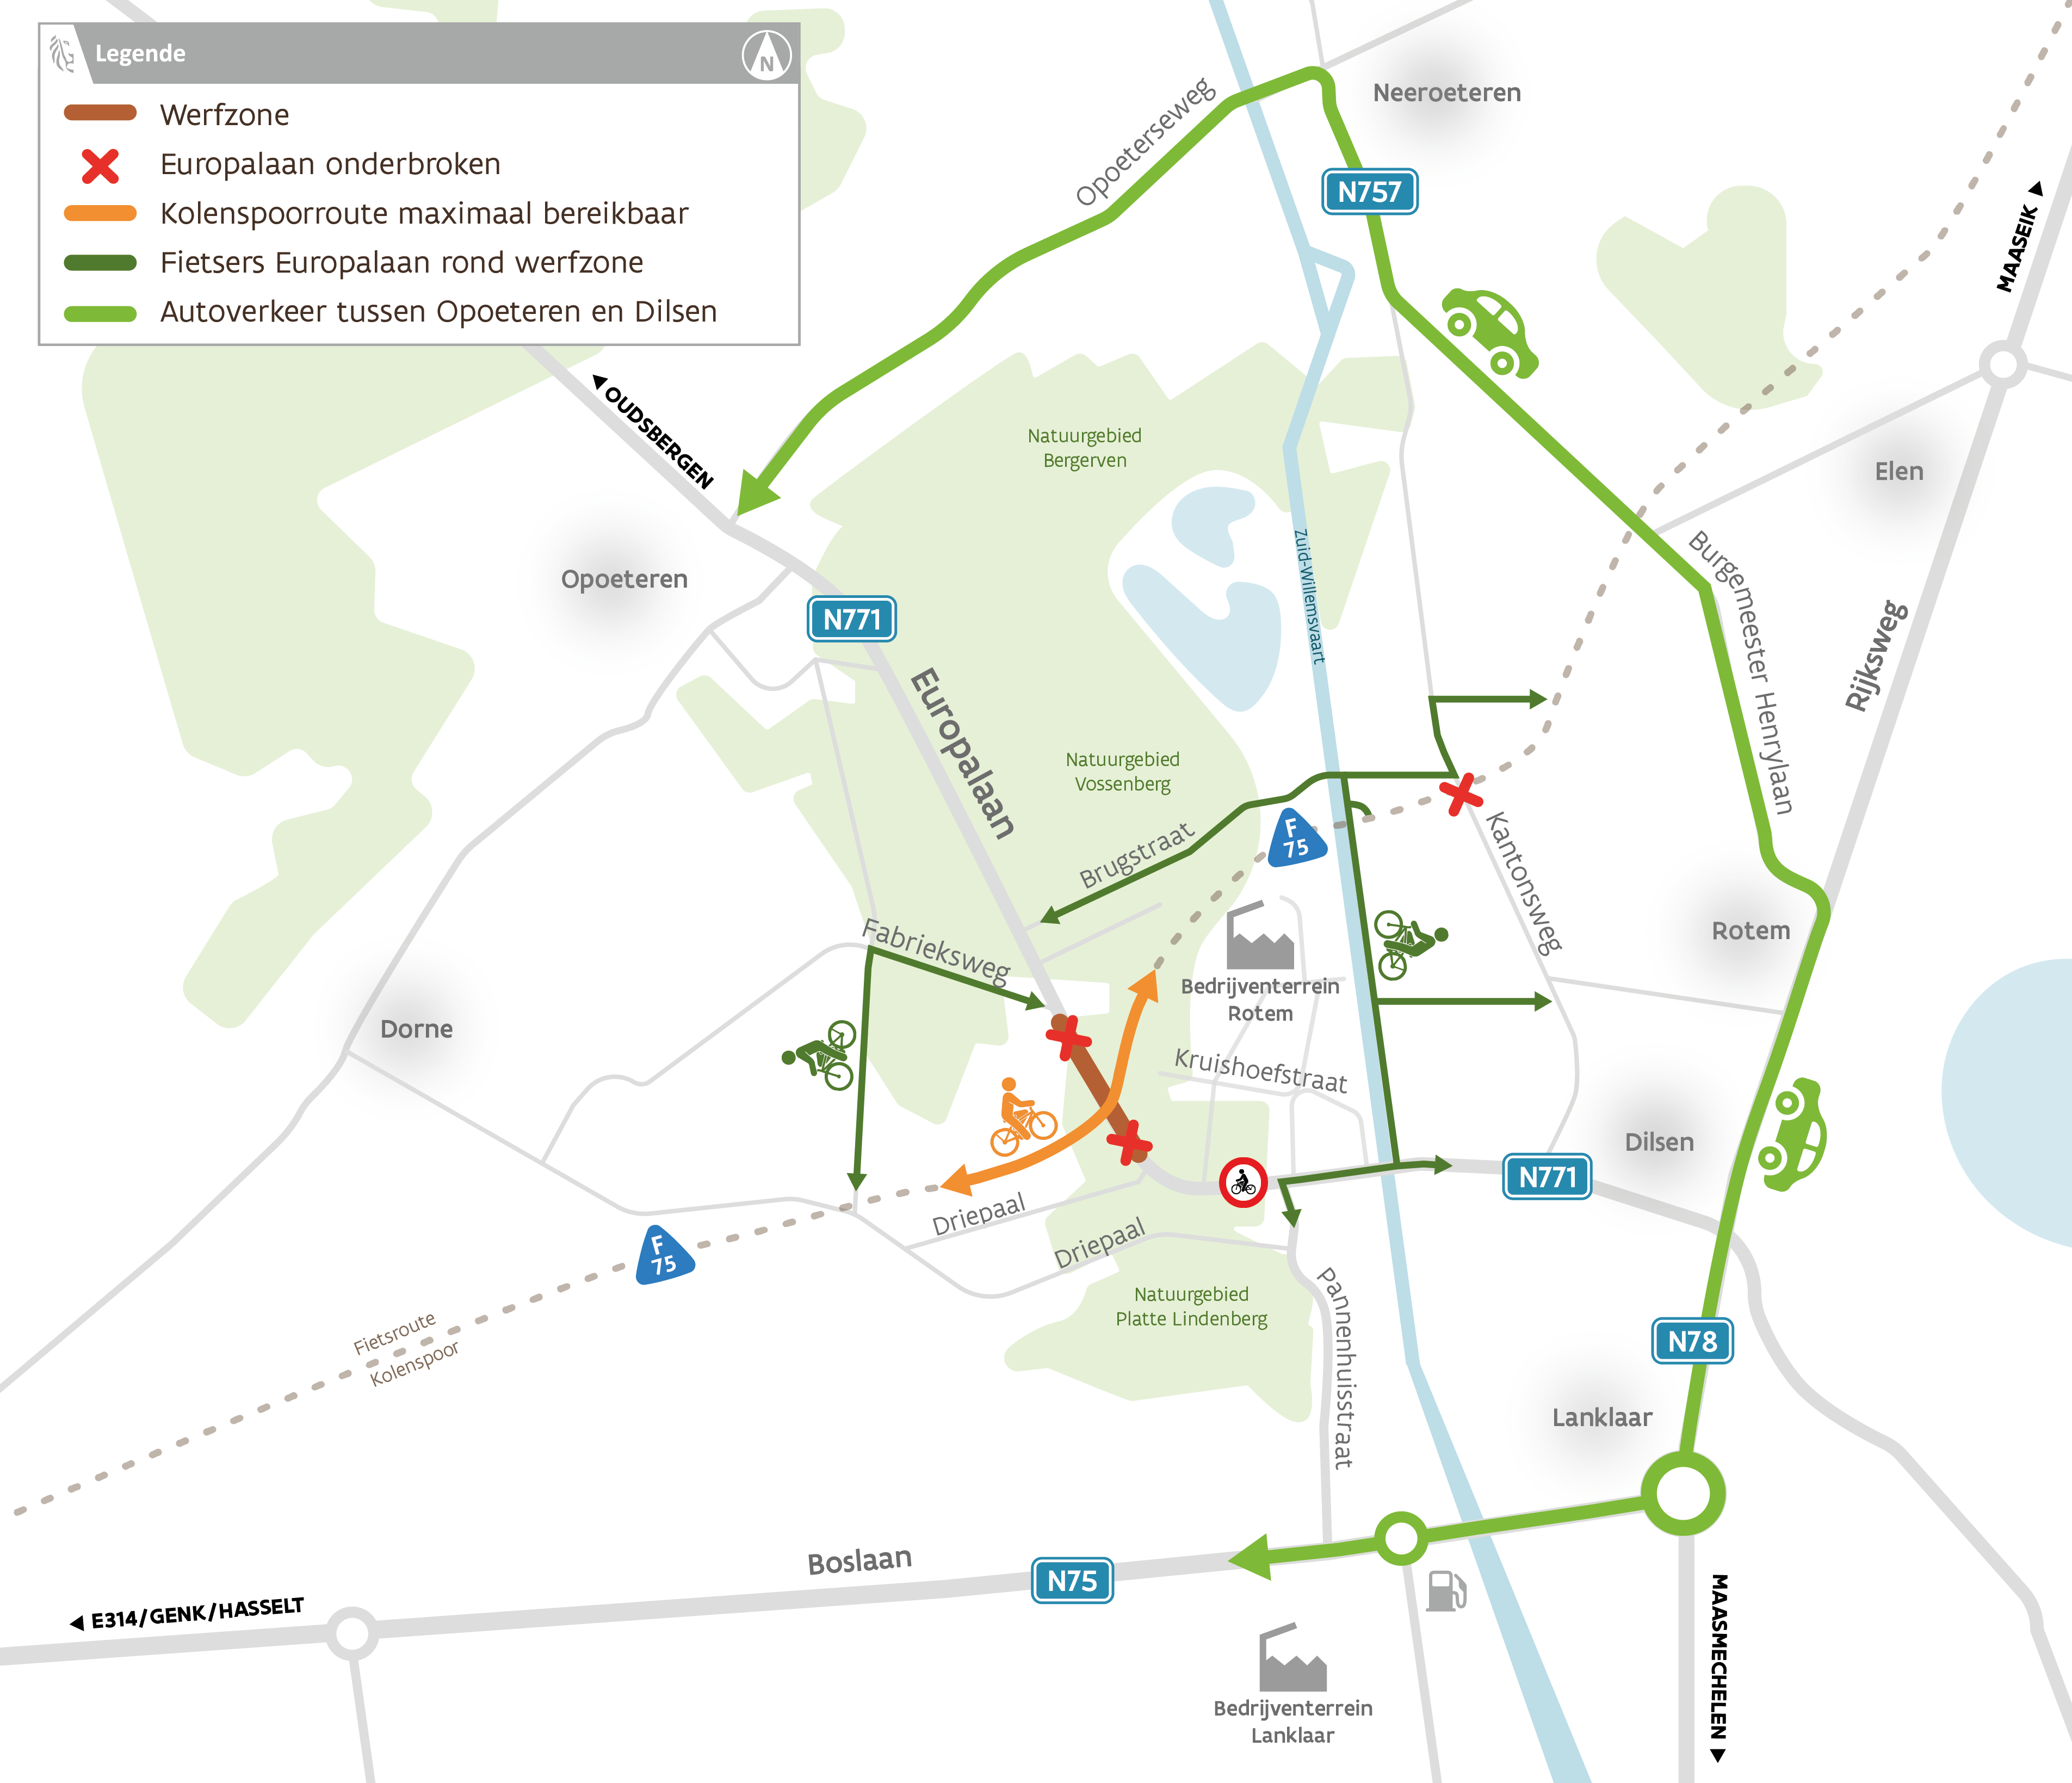 Bouw fiets- en faunapassage Vossenberg start volgende week op de Europalaan